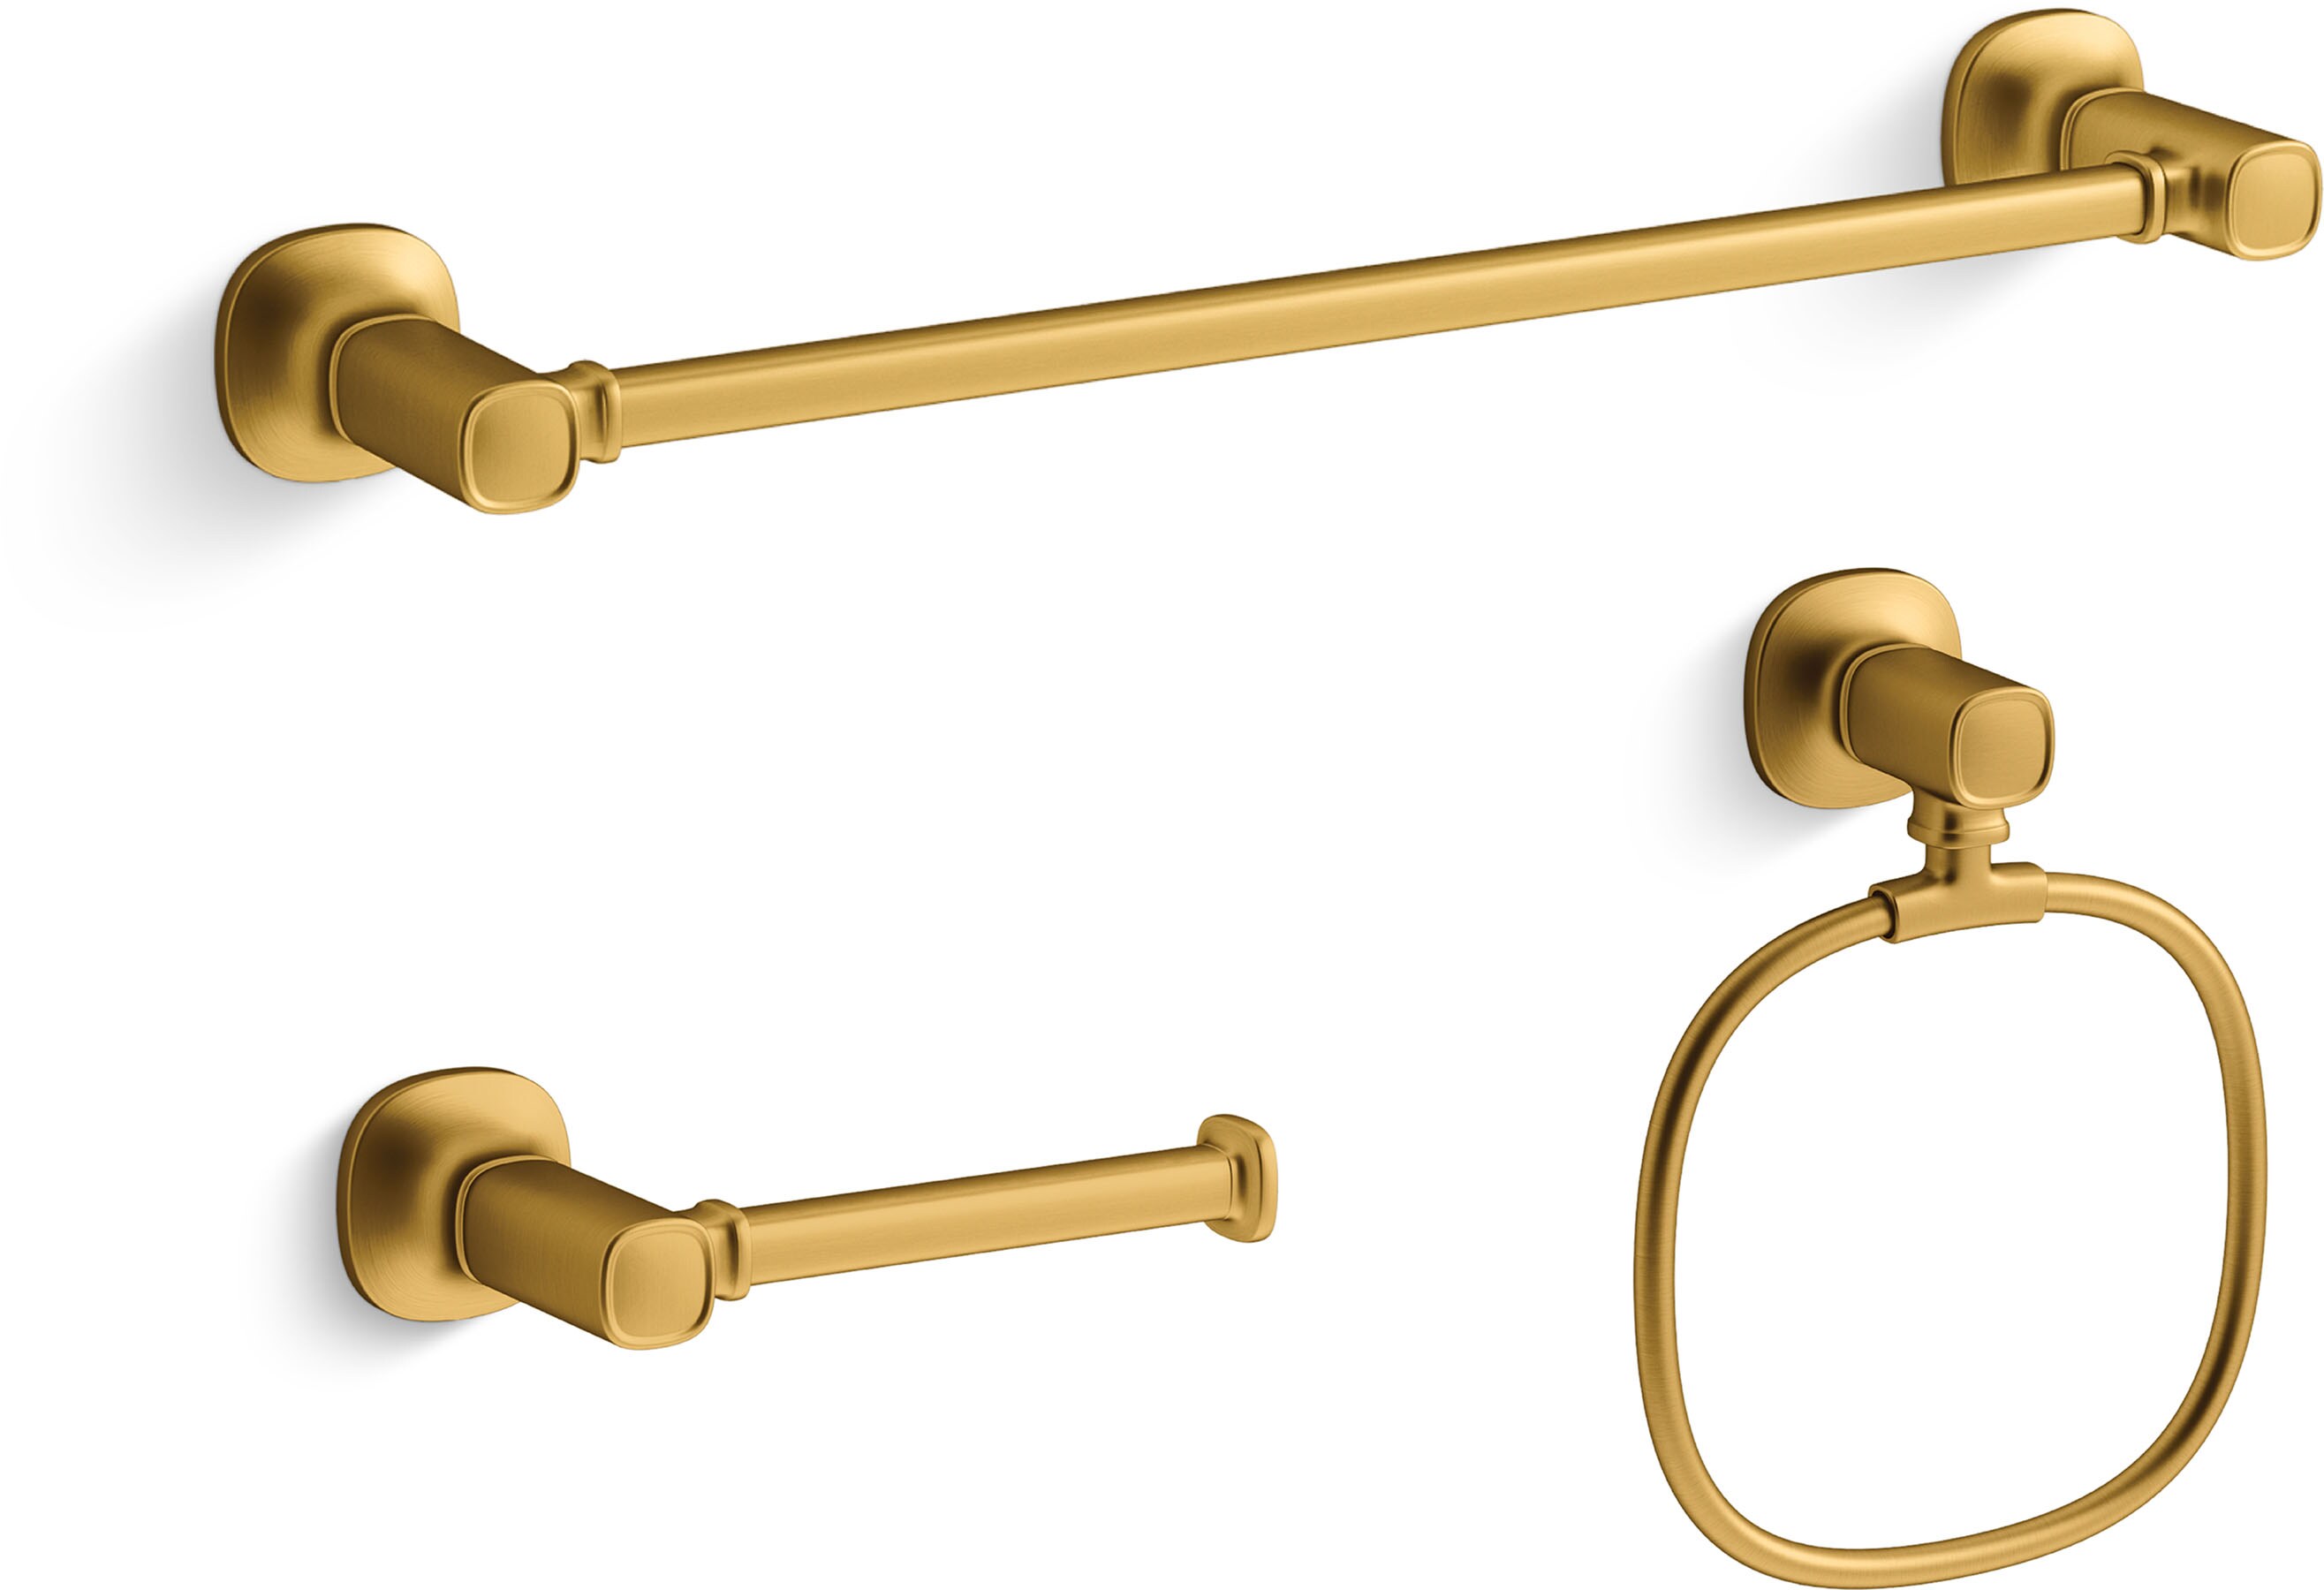 KOHLER 3-Piece Ealing Vibrant Brushed Moderne Brass Decorative Bathroom  Hardware Set with Towel Bar,Toilet Paper Holder and Towel Ring